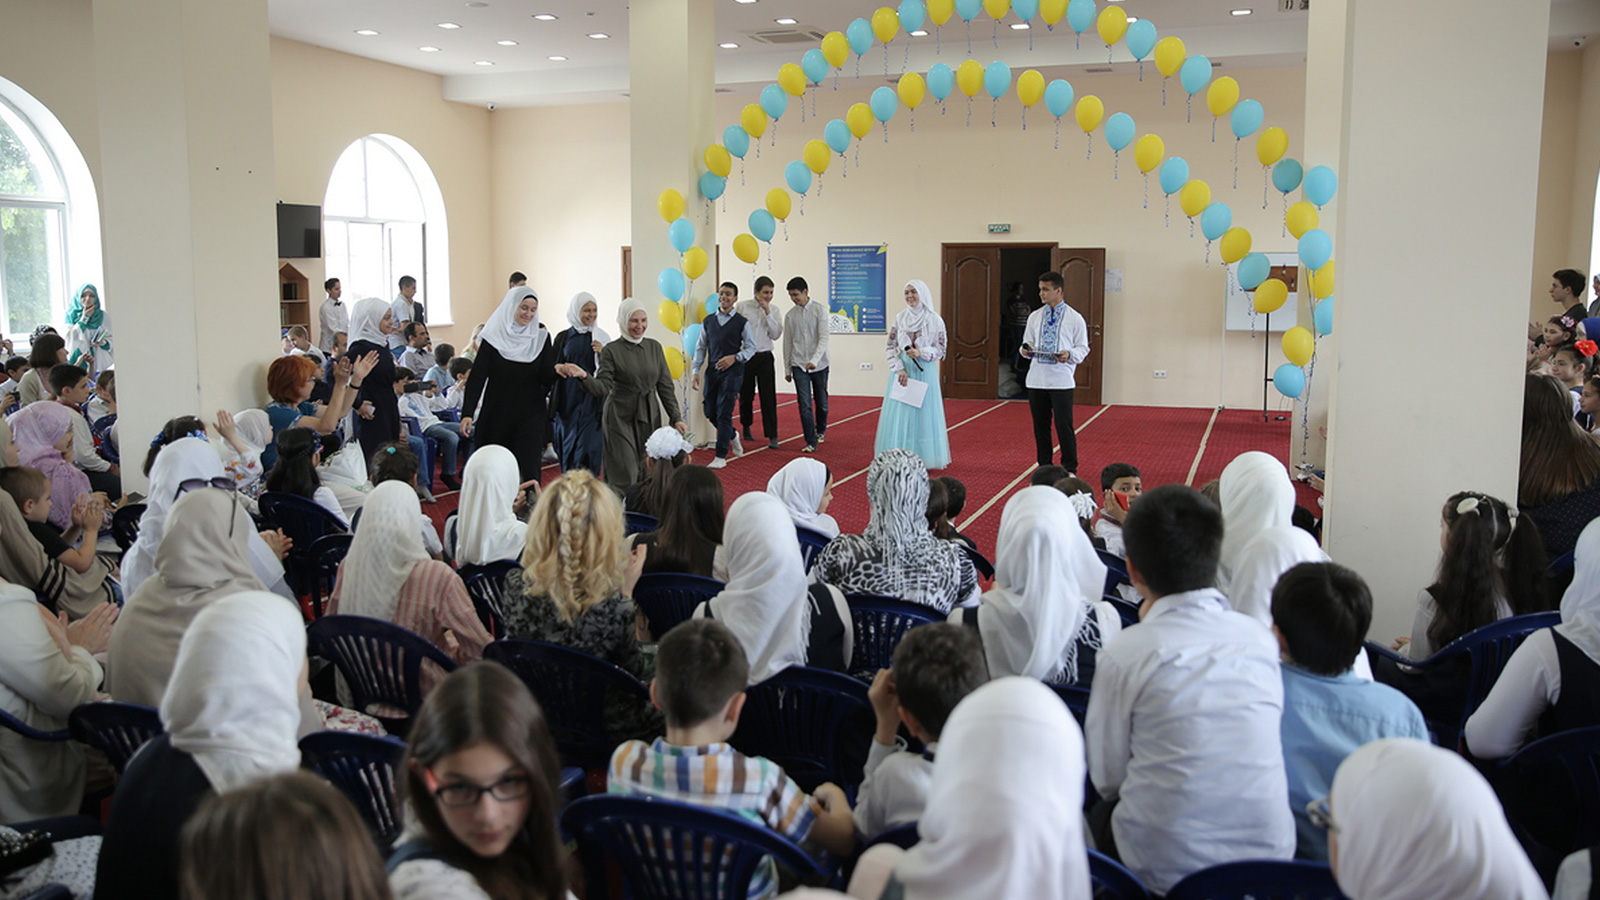  افتتاح مدرسة مستقبلنا النظامية الخاصة بالعرب والمسلمين في كييف  (الجزيرة)